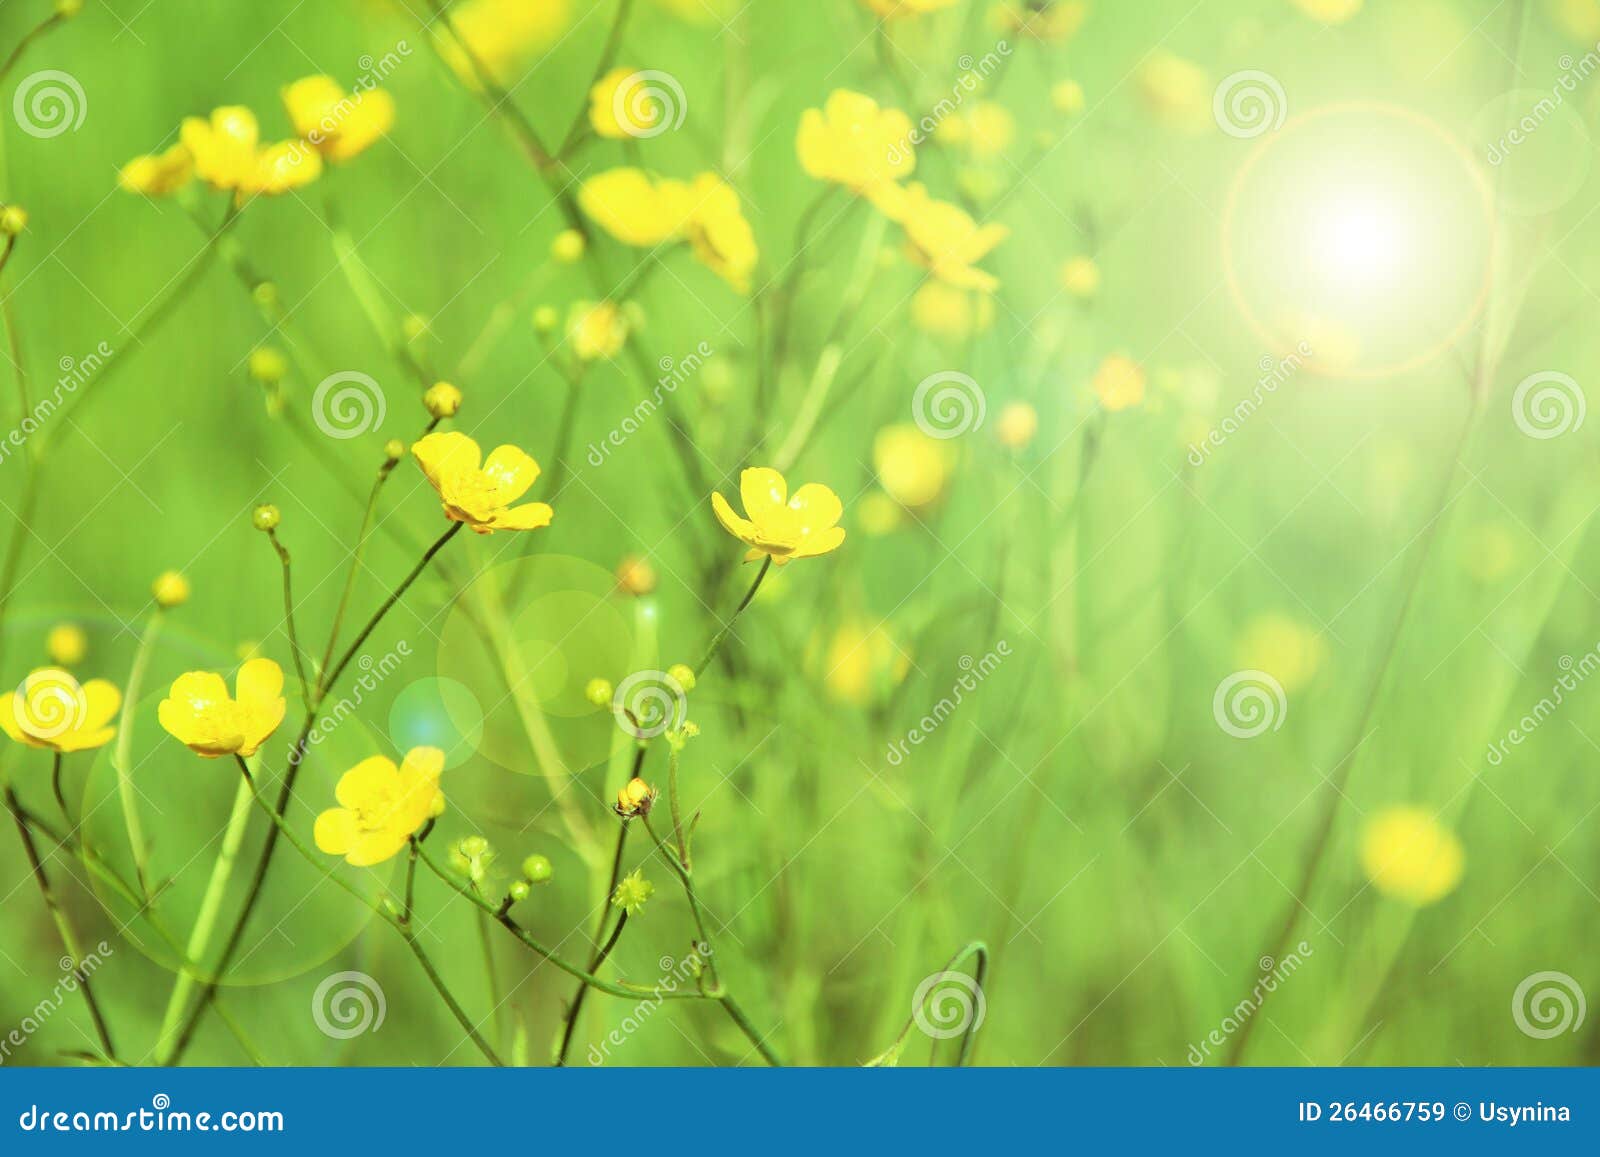 在一个绿色背景的嫩黄色花